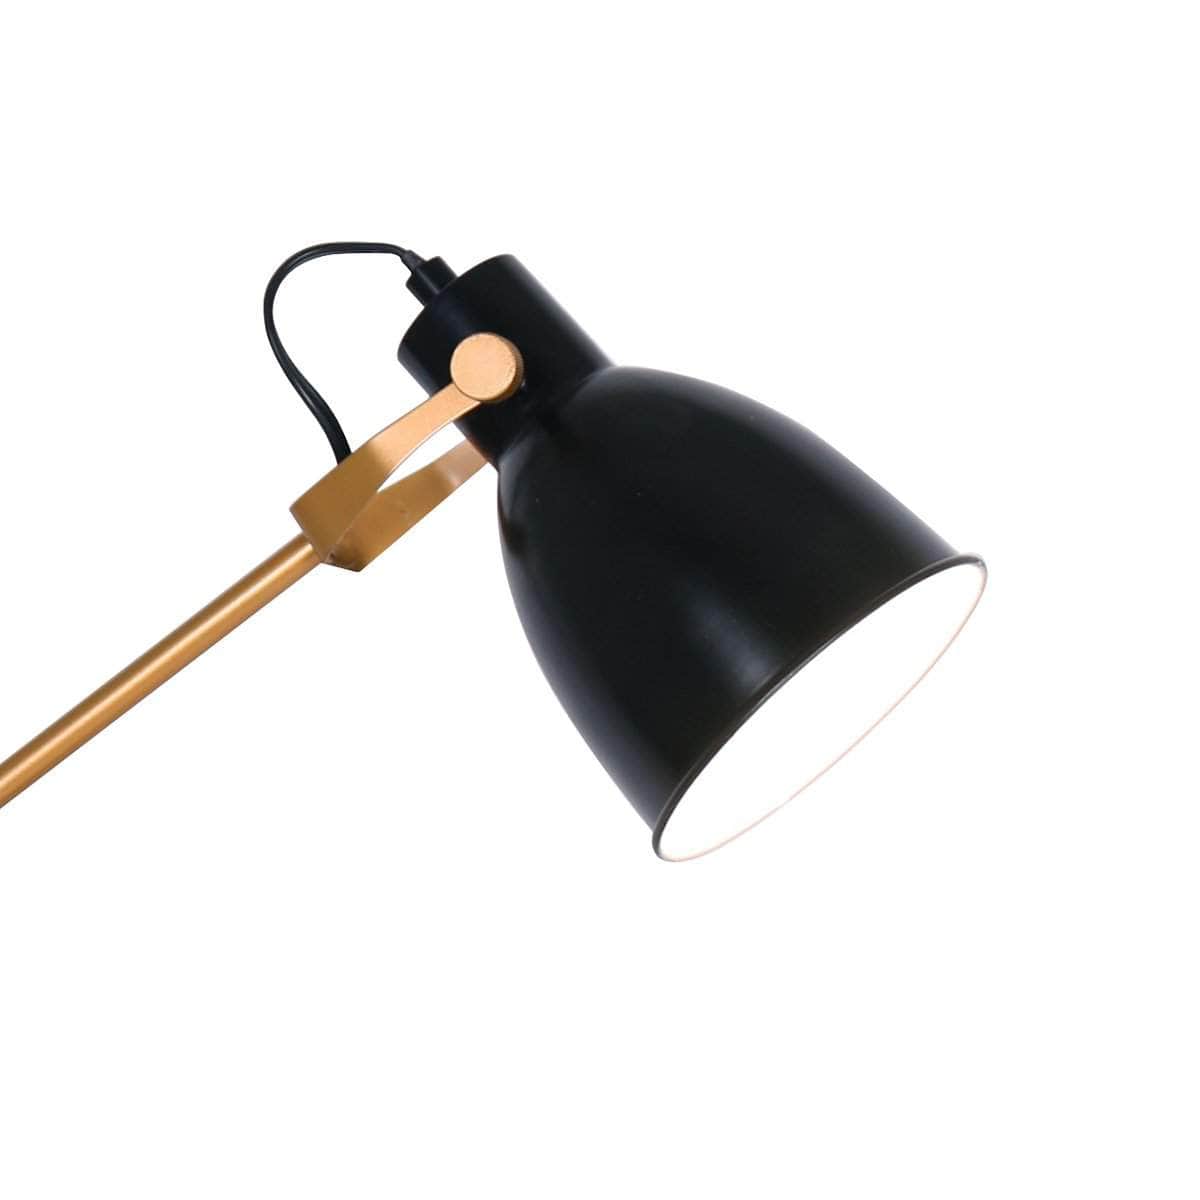 Elegance Illuminated Adjustable Black and Gold Metal Table Lamp